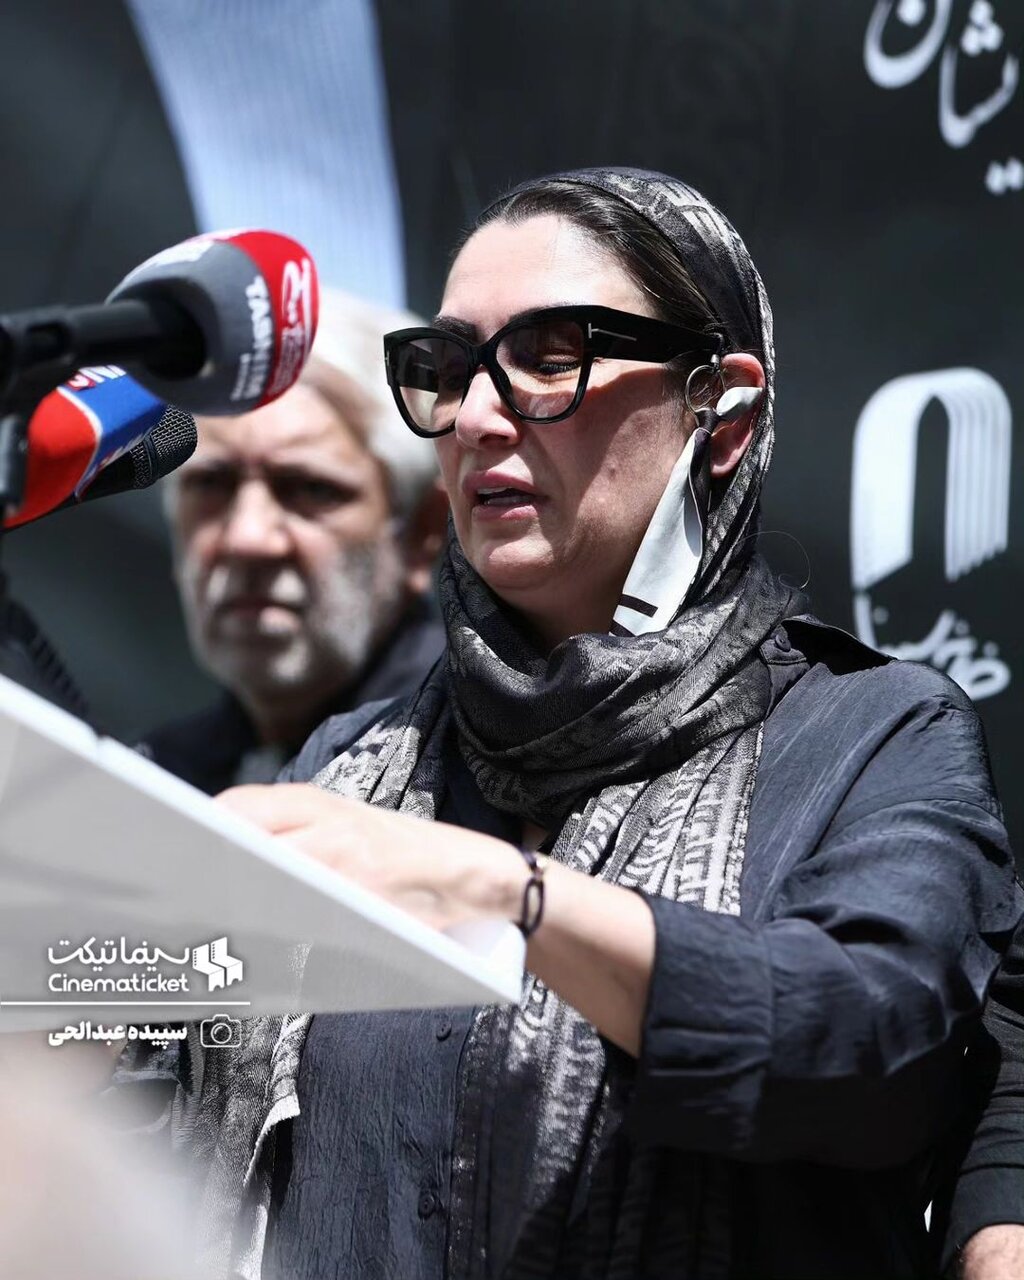 بازیگرانی که در مراسم تشییع سعید راد شرکت کردند + تصاویر | از ساره بیات تا هومن حاج عبدالهی